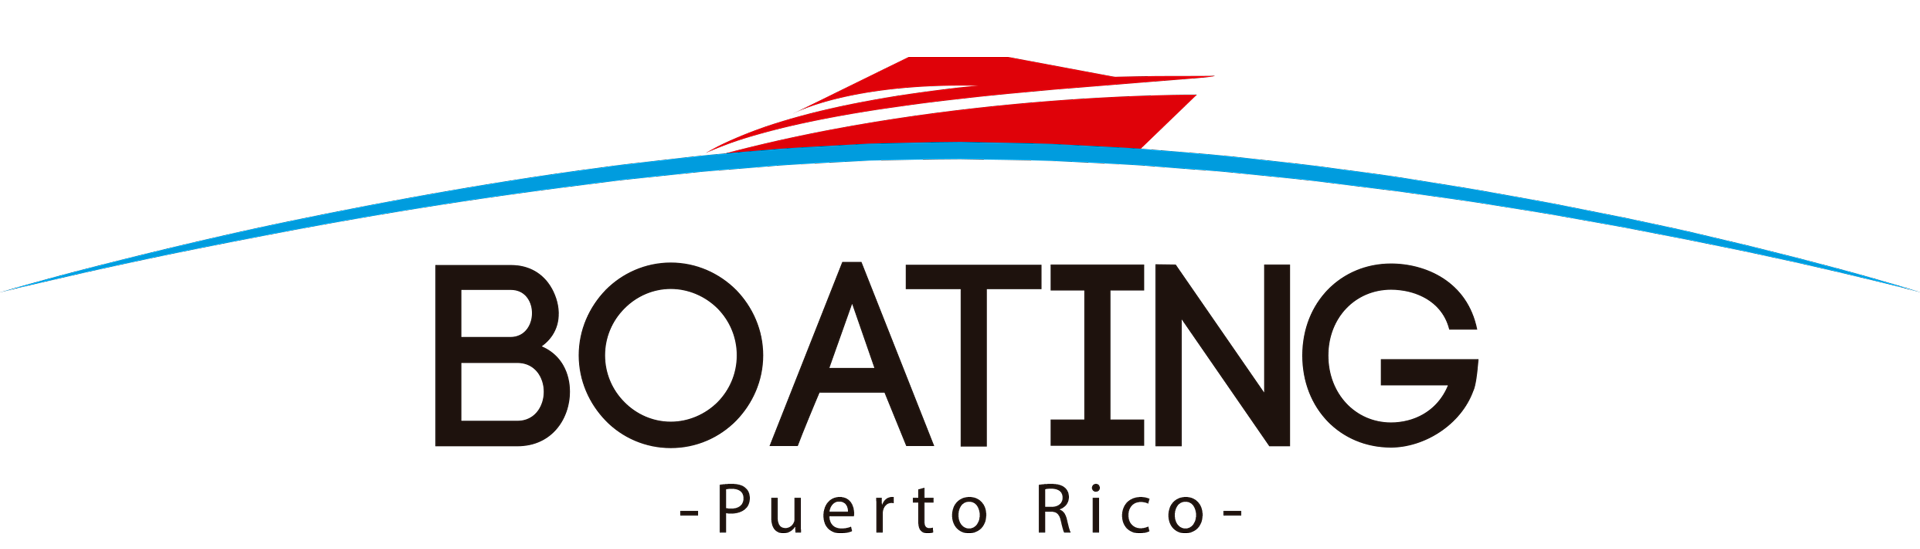 yacht rentals puerto rico